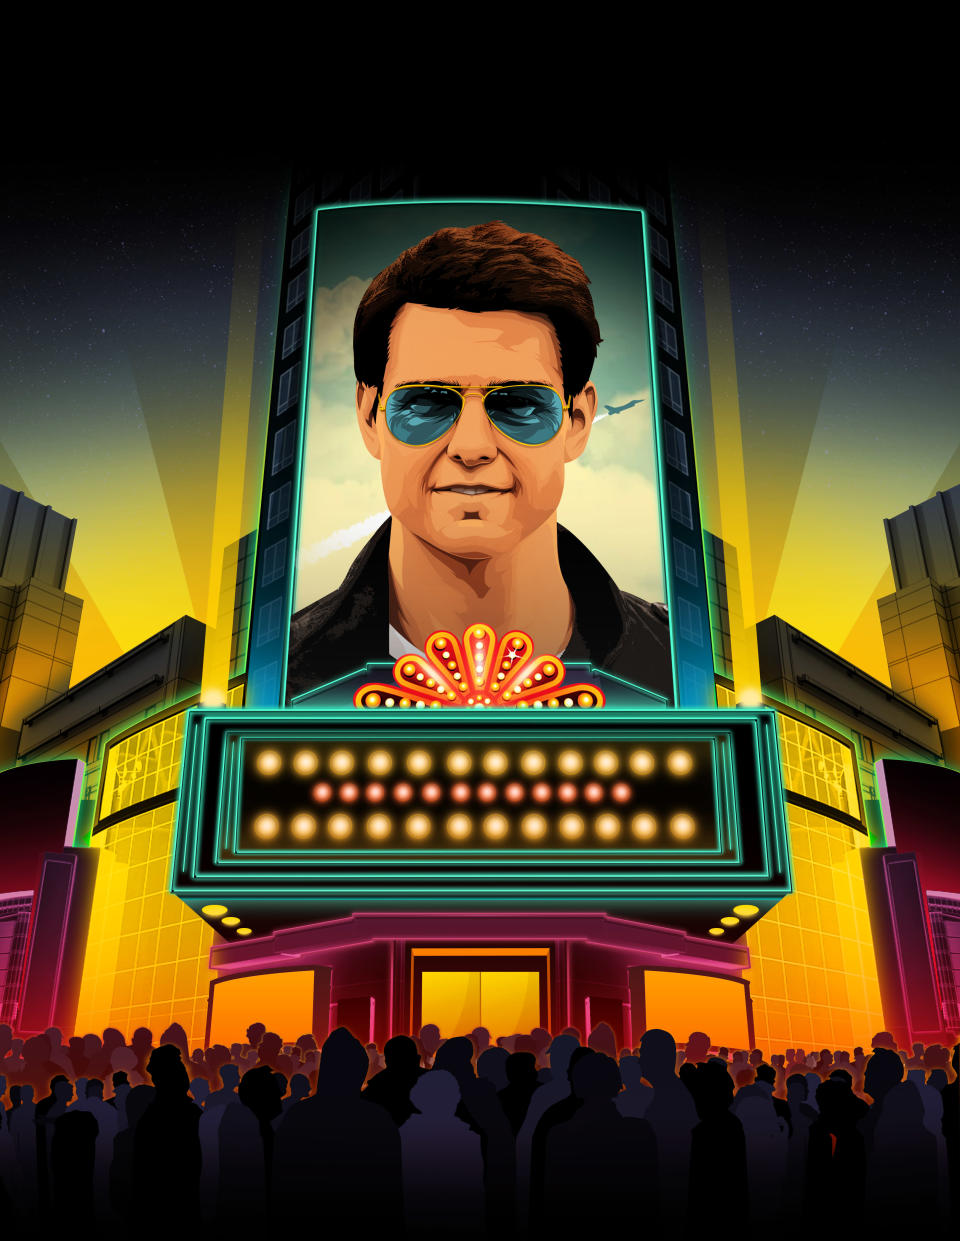 En una época en la que los superhéroes dominan la taquilla, la industria cinematográfica espera que Tom Cruise pueda hacer que los adultos vuelvan a las salas de cine. (Taylor Callery/The New York Times)